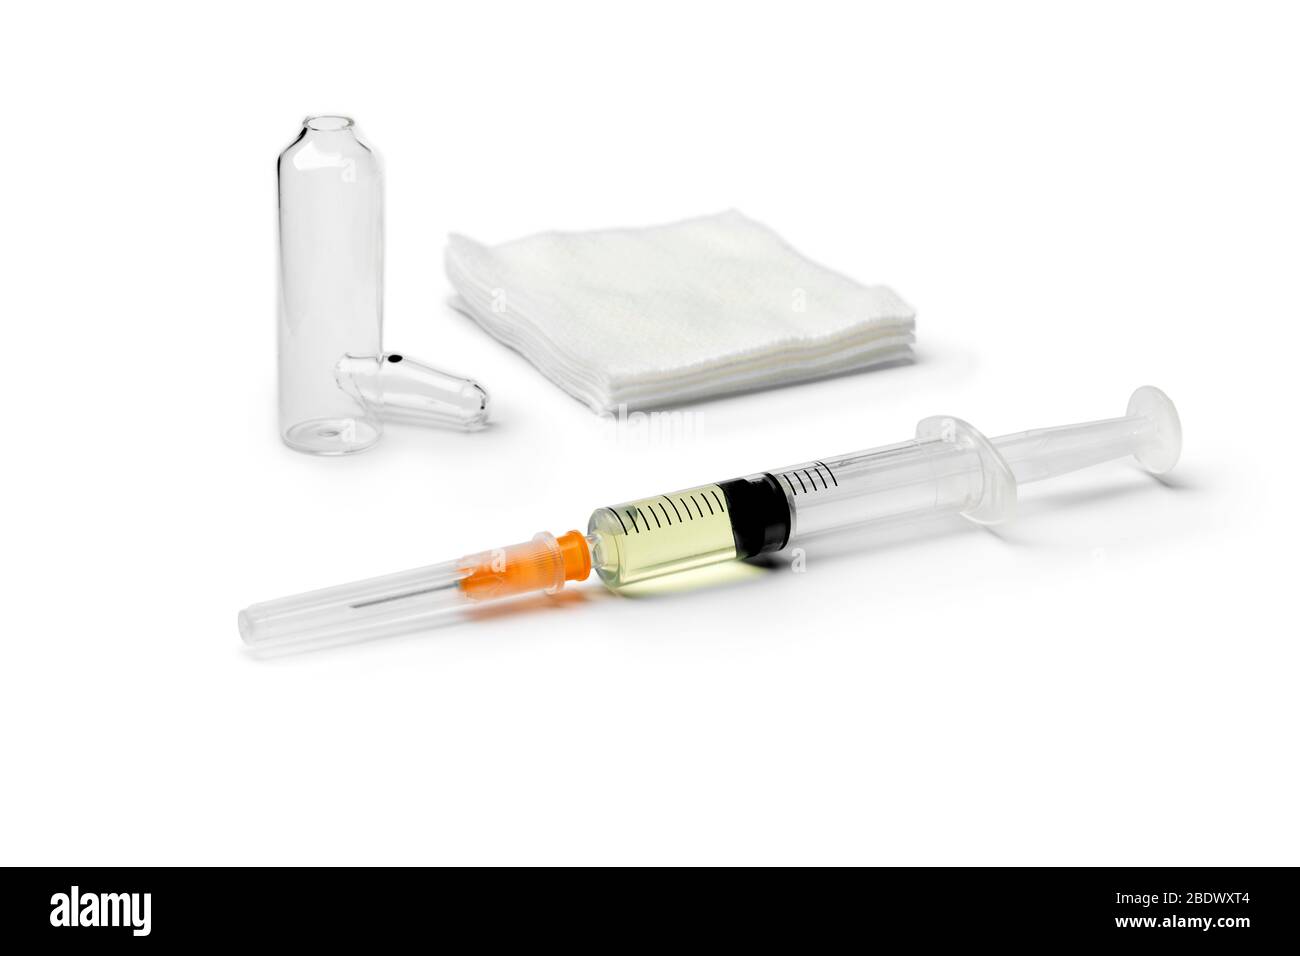 Ampoule de médicament médical et seringue en attente d'injection isolée sur fond blanc Banque D'Images